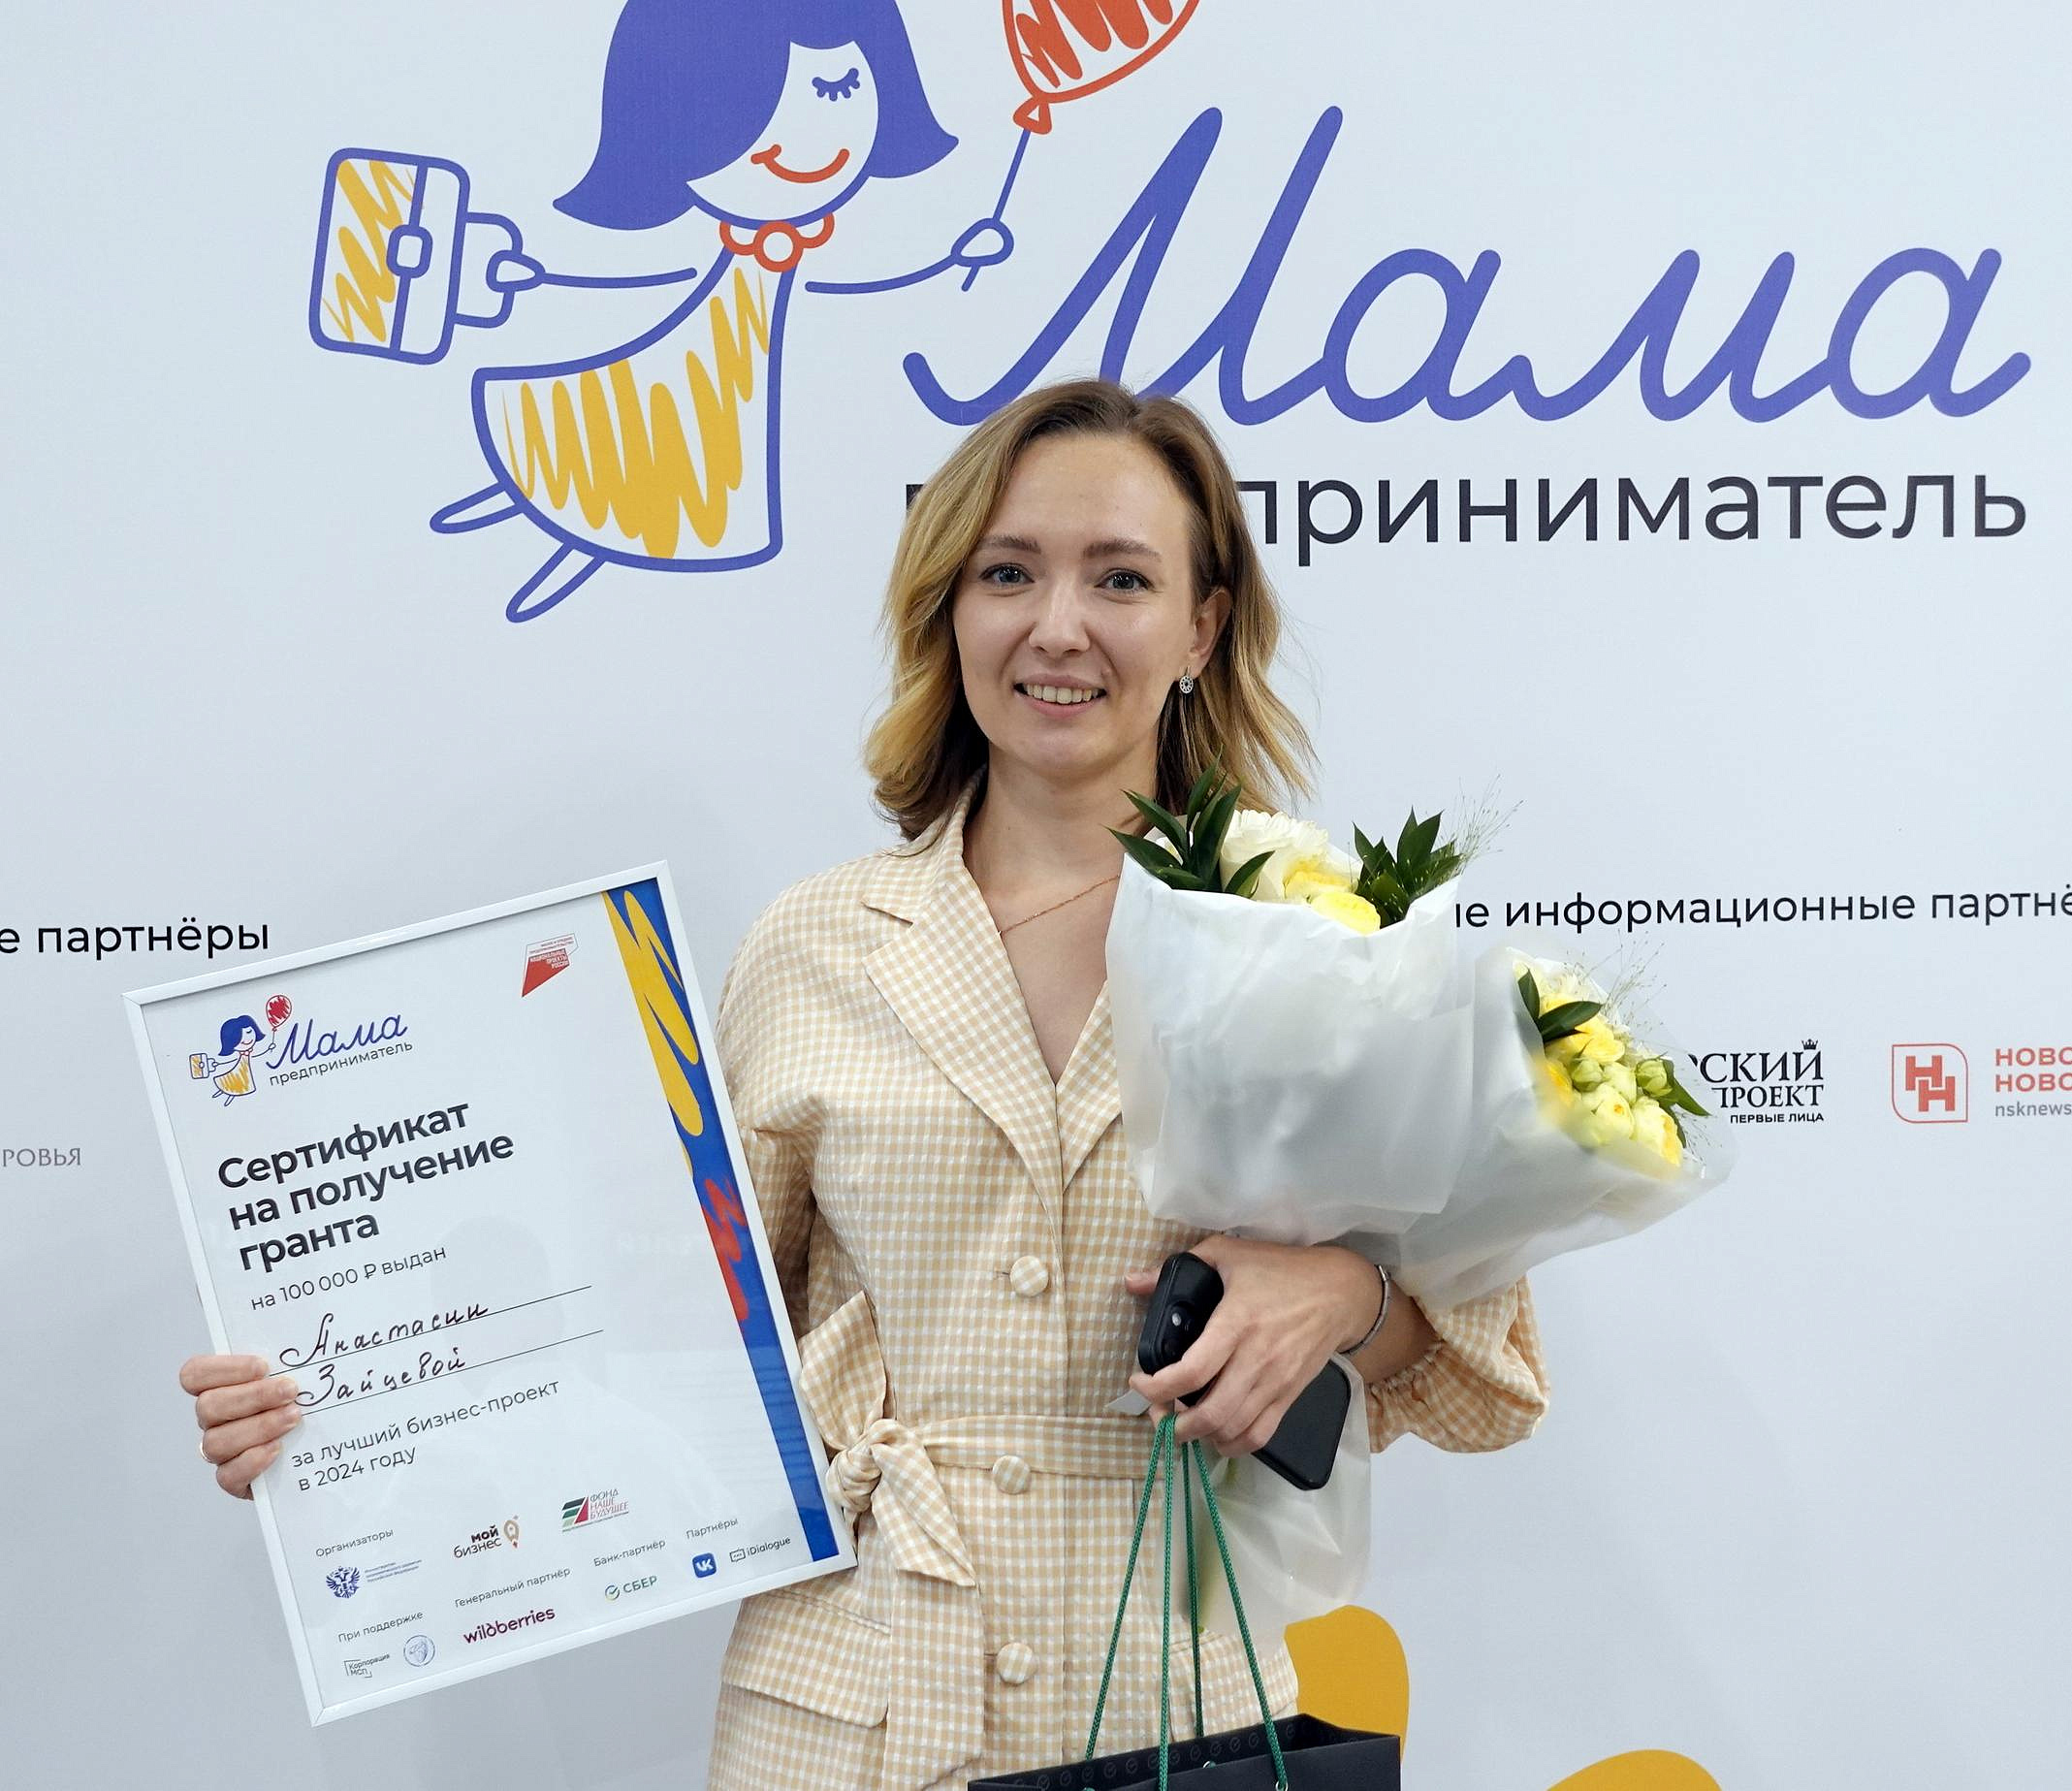 Организатор квестов выиграла 100 тысяч на развитие бизнеса в Новосибирске